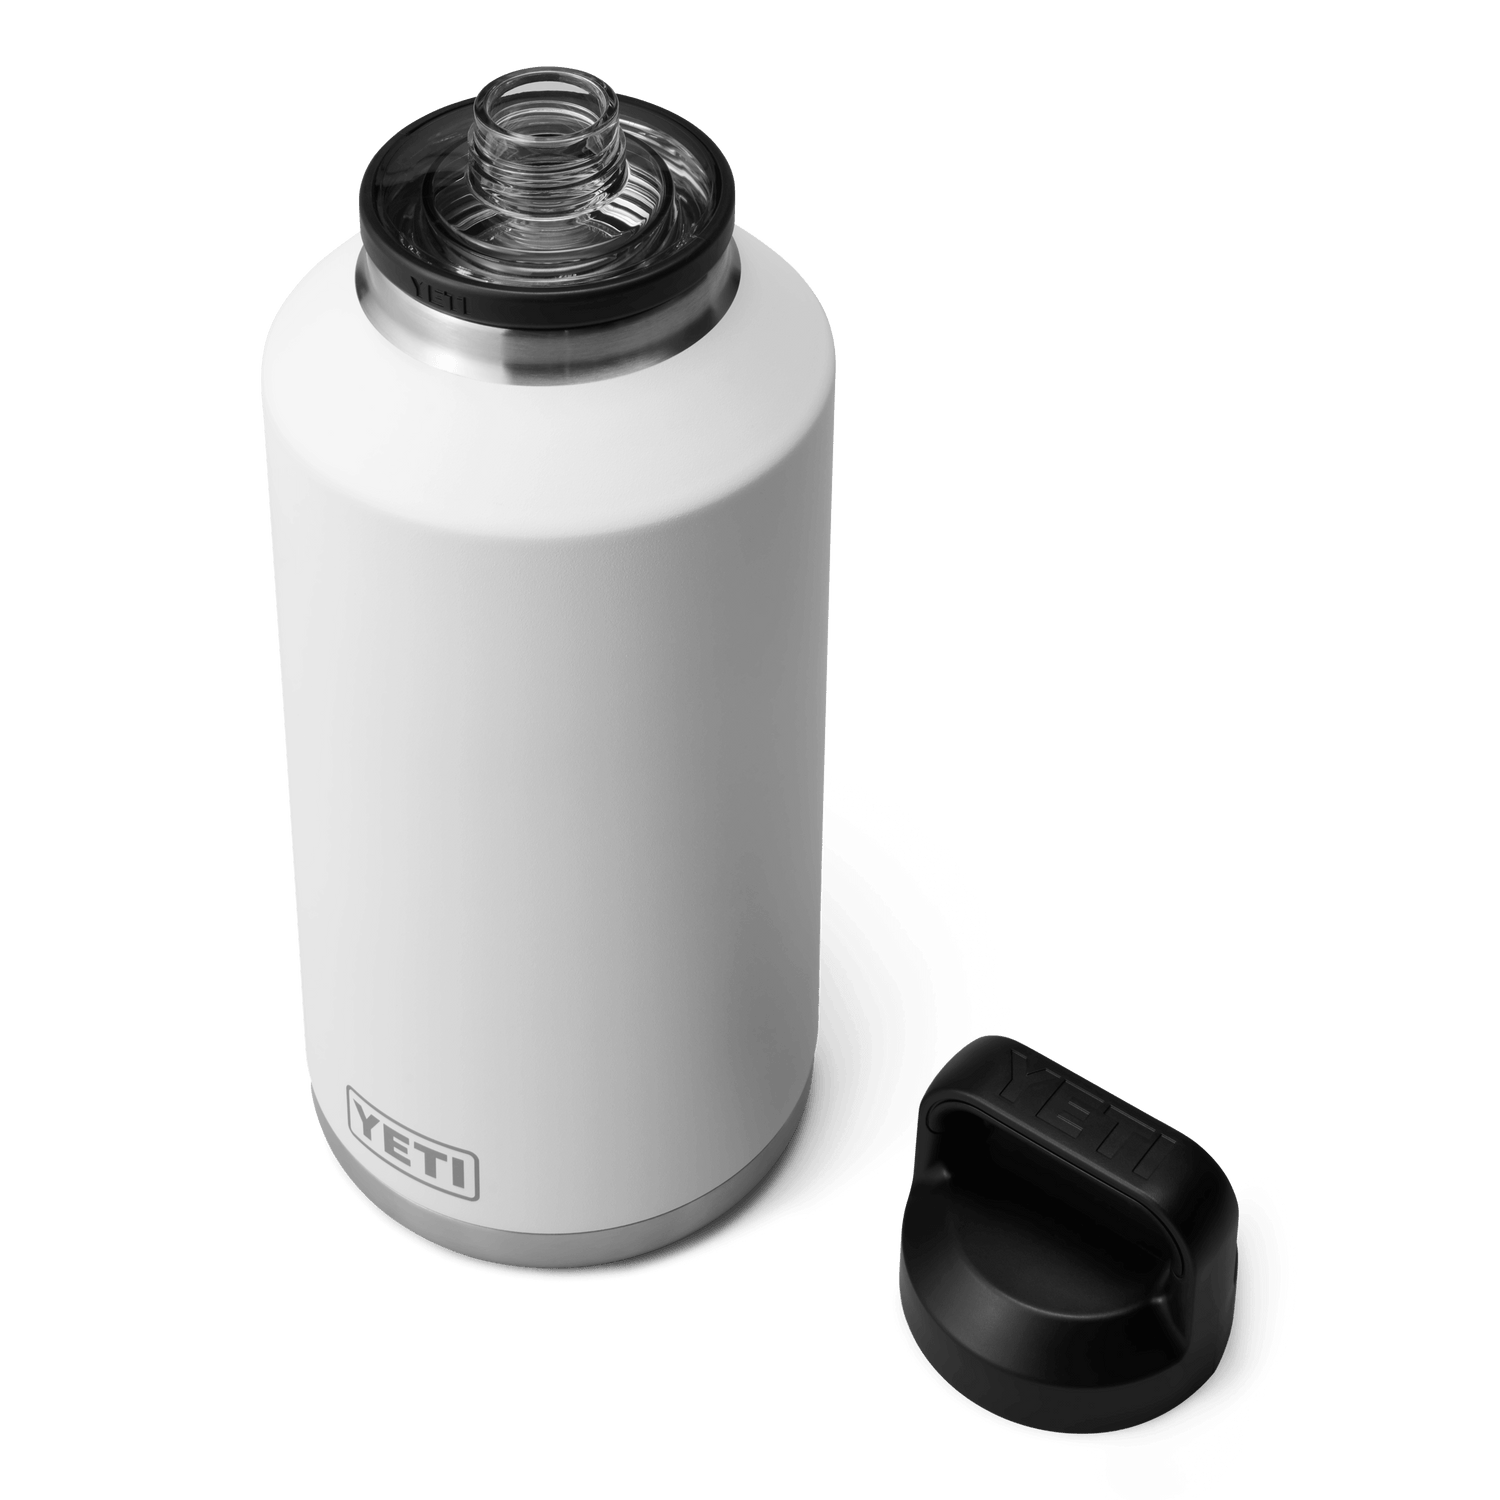 YETI Rambler® 64 oz Flasche (1,9 l) mit Chug-Verschluss Weiss